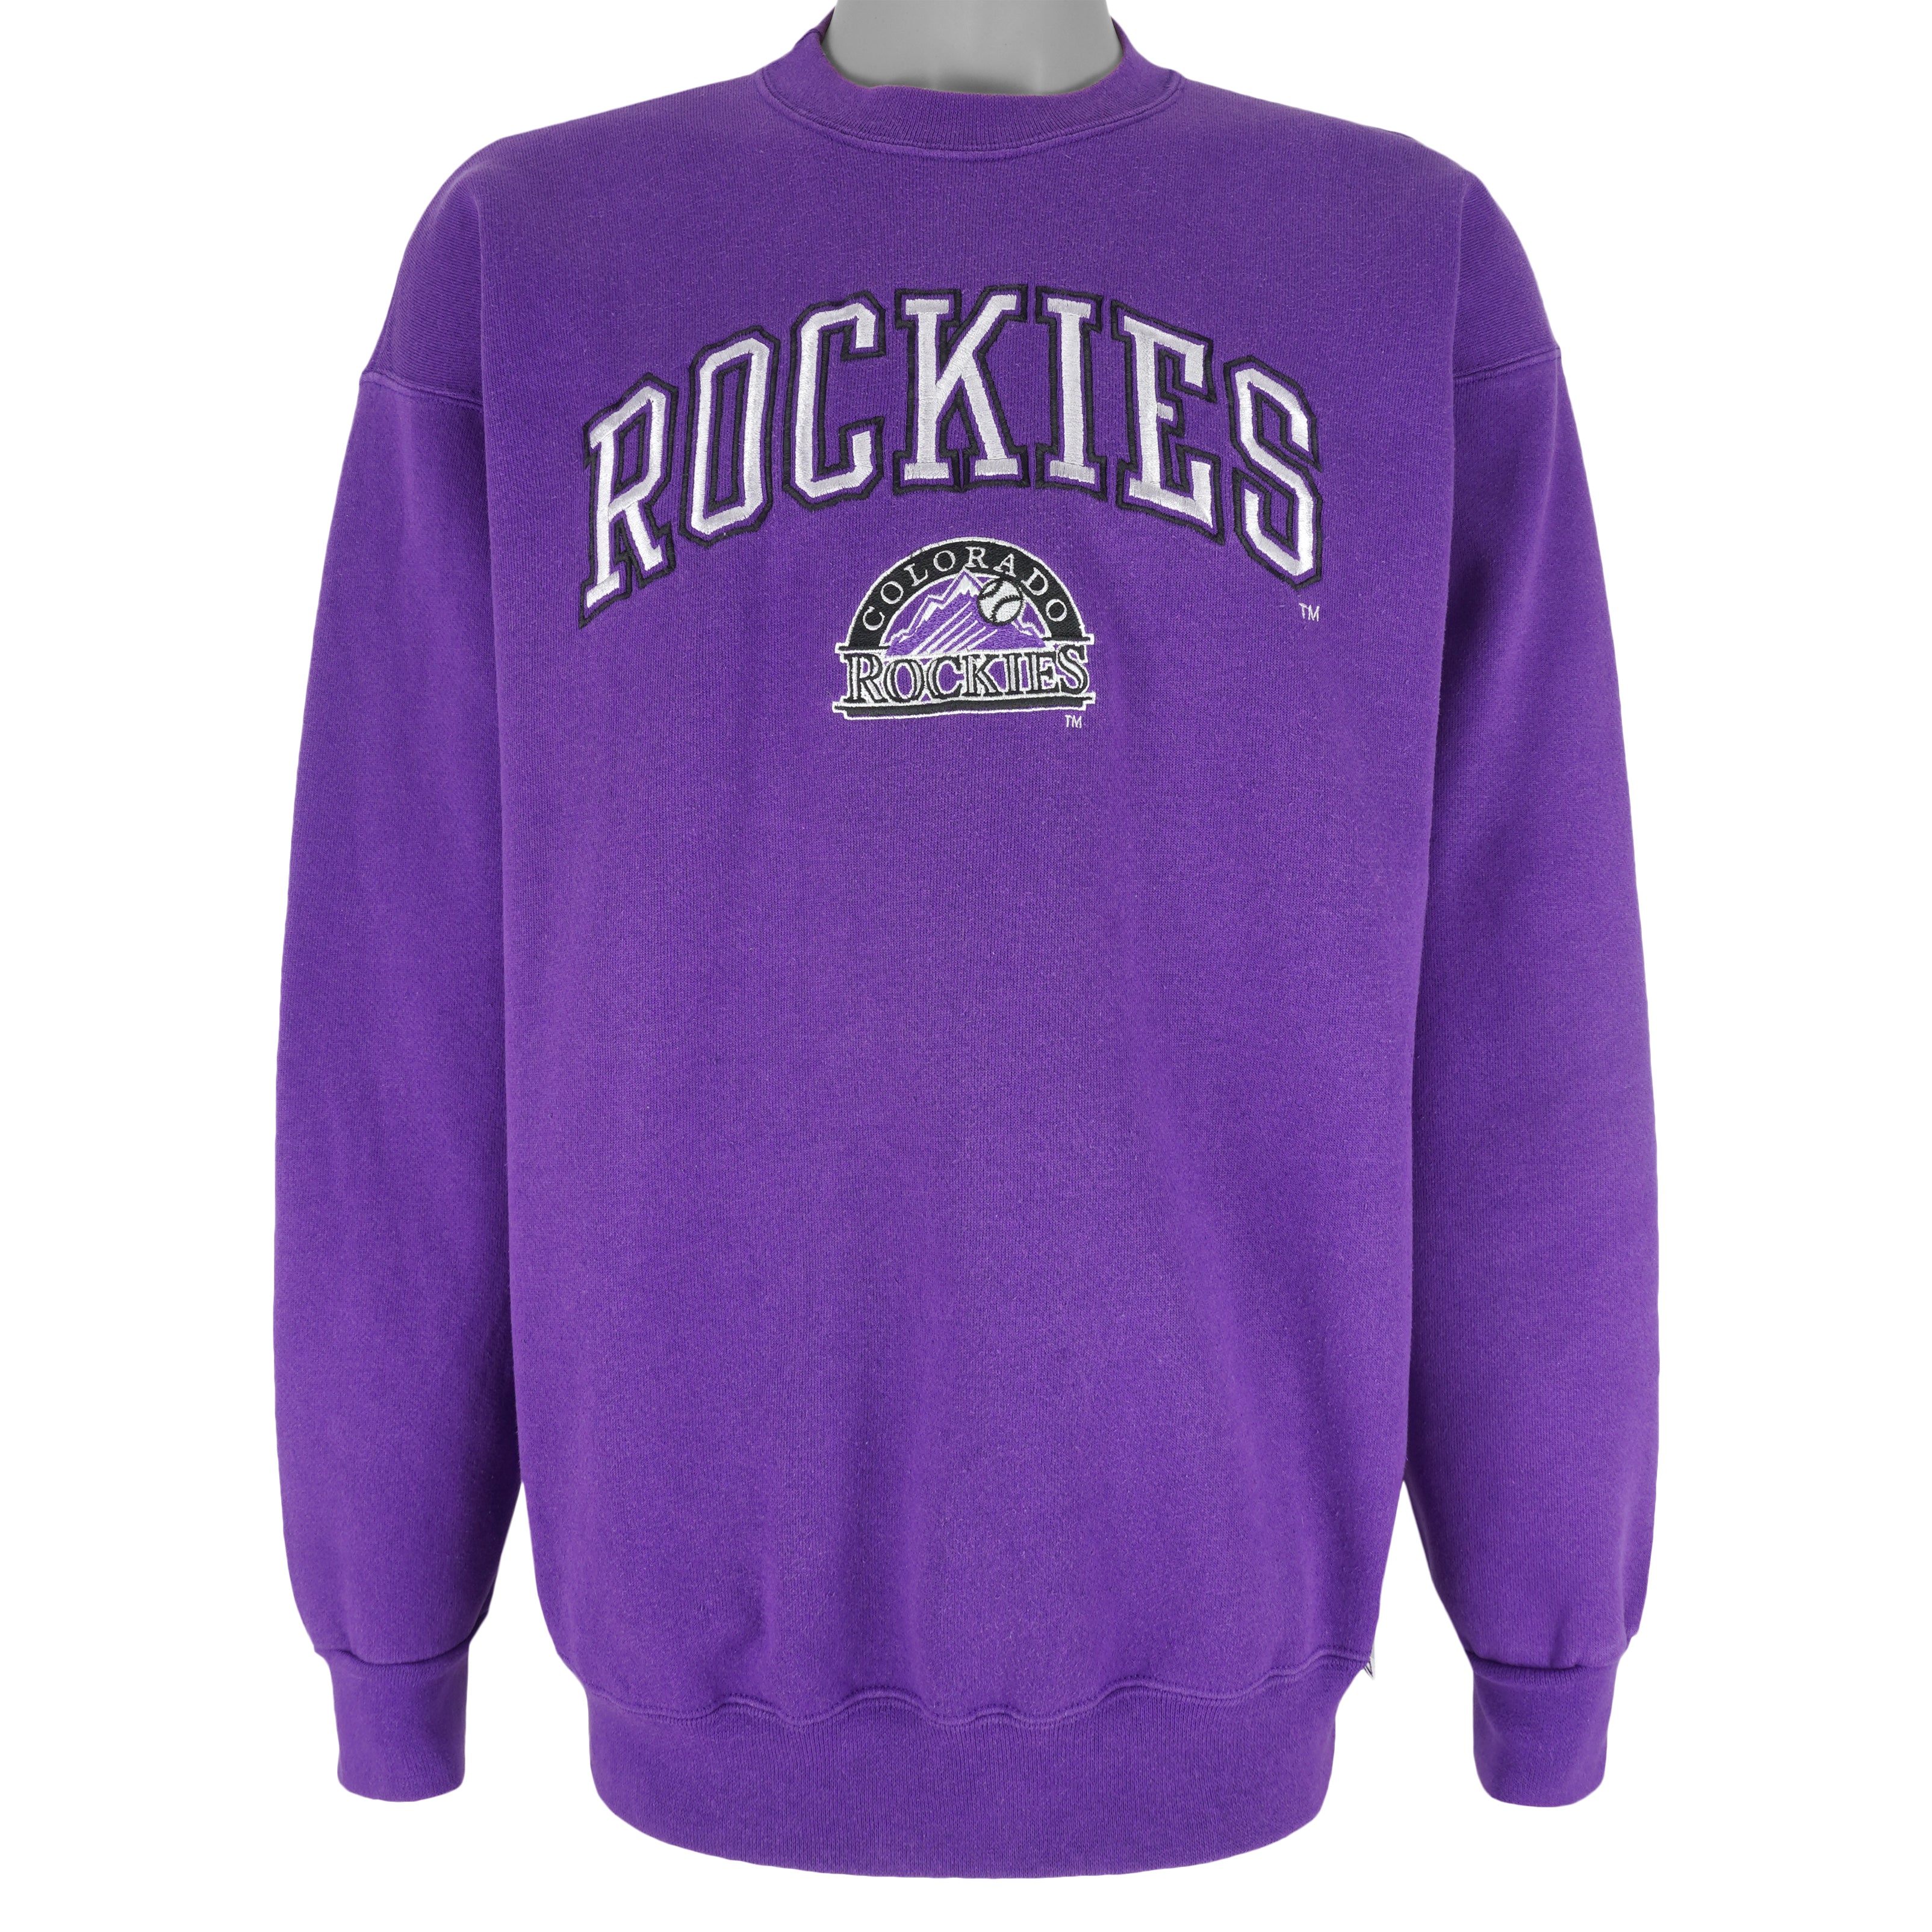 Rockies Men's Shirt - Purple - L